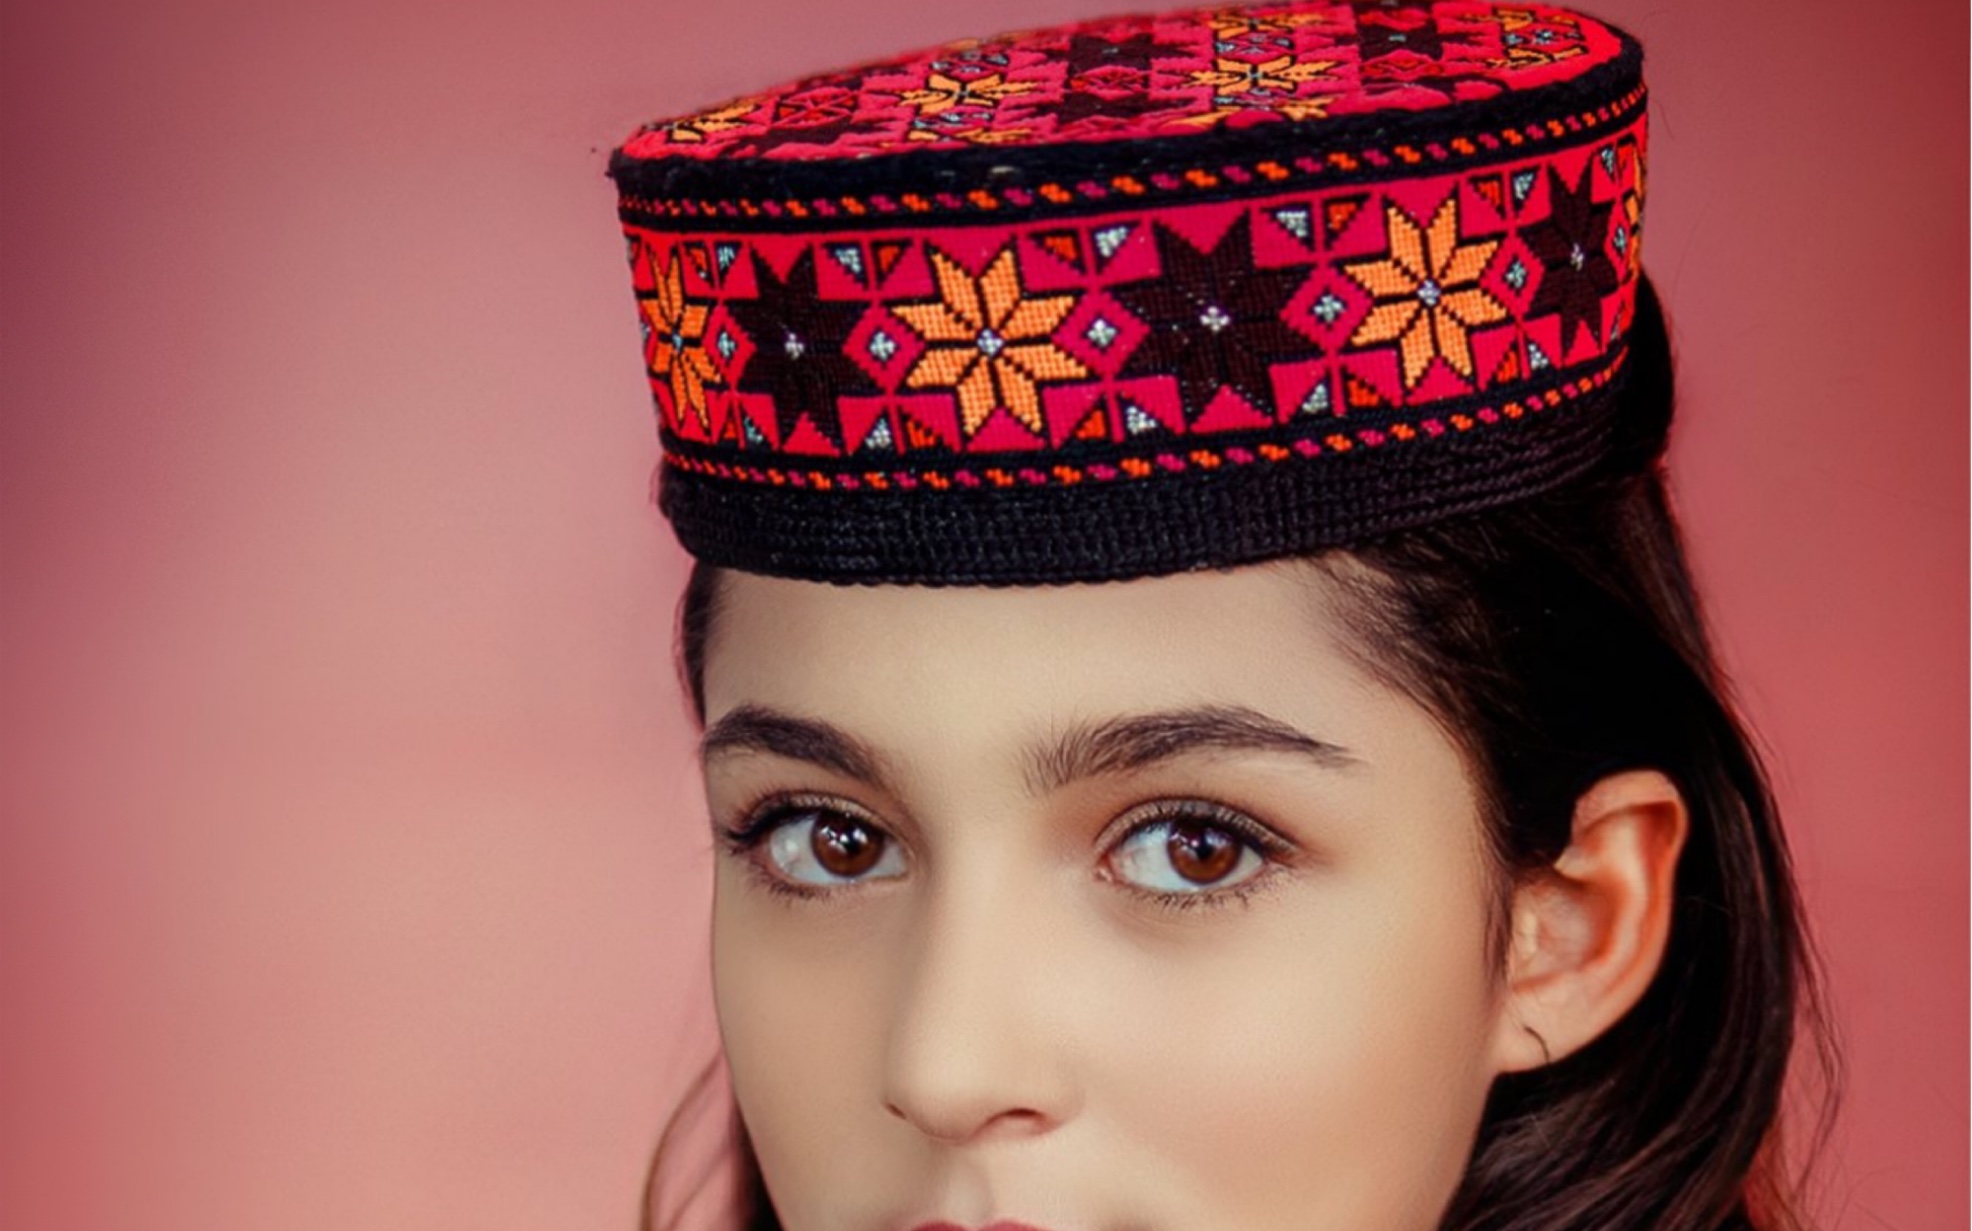 塔吉克斯坦美女照片图片